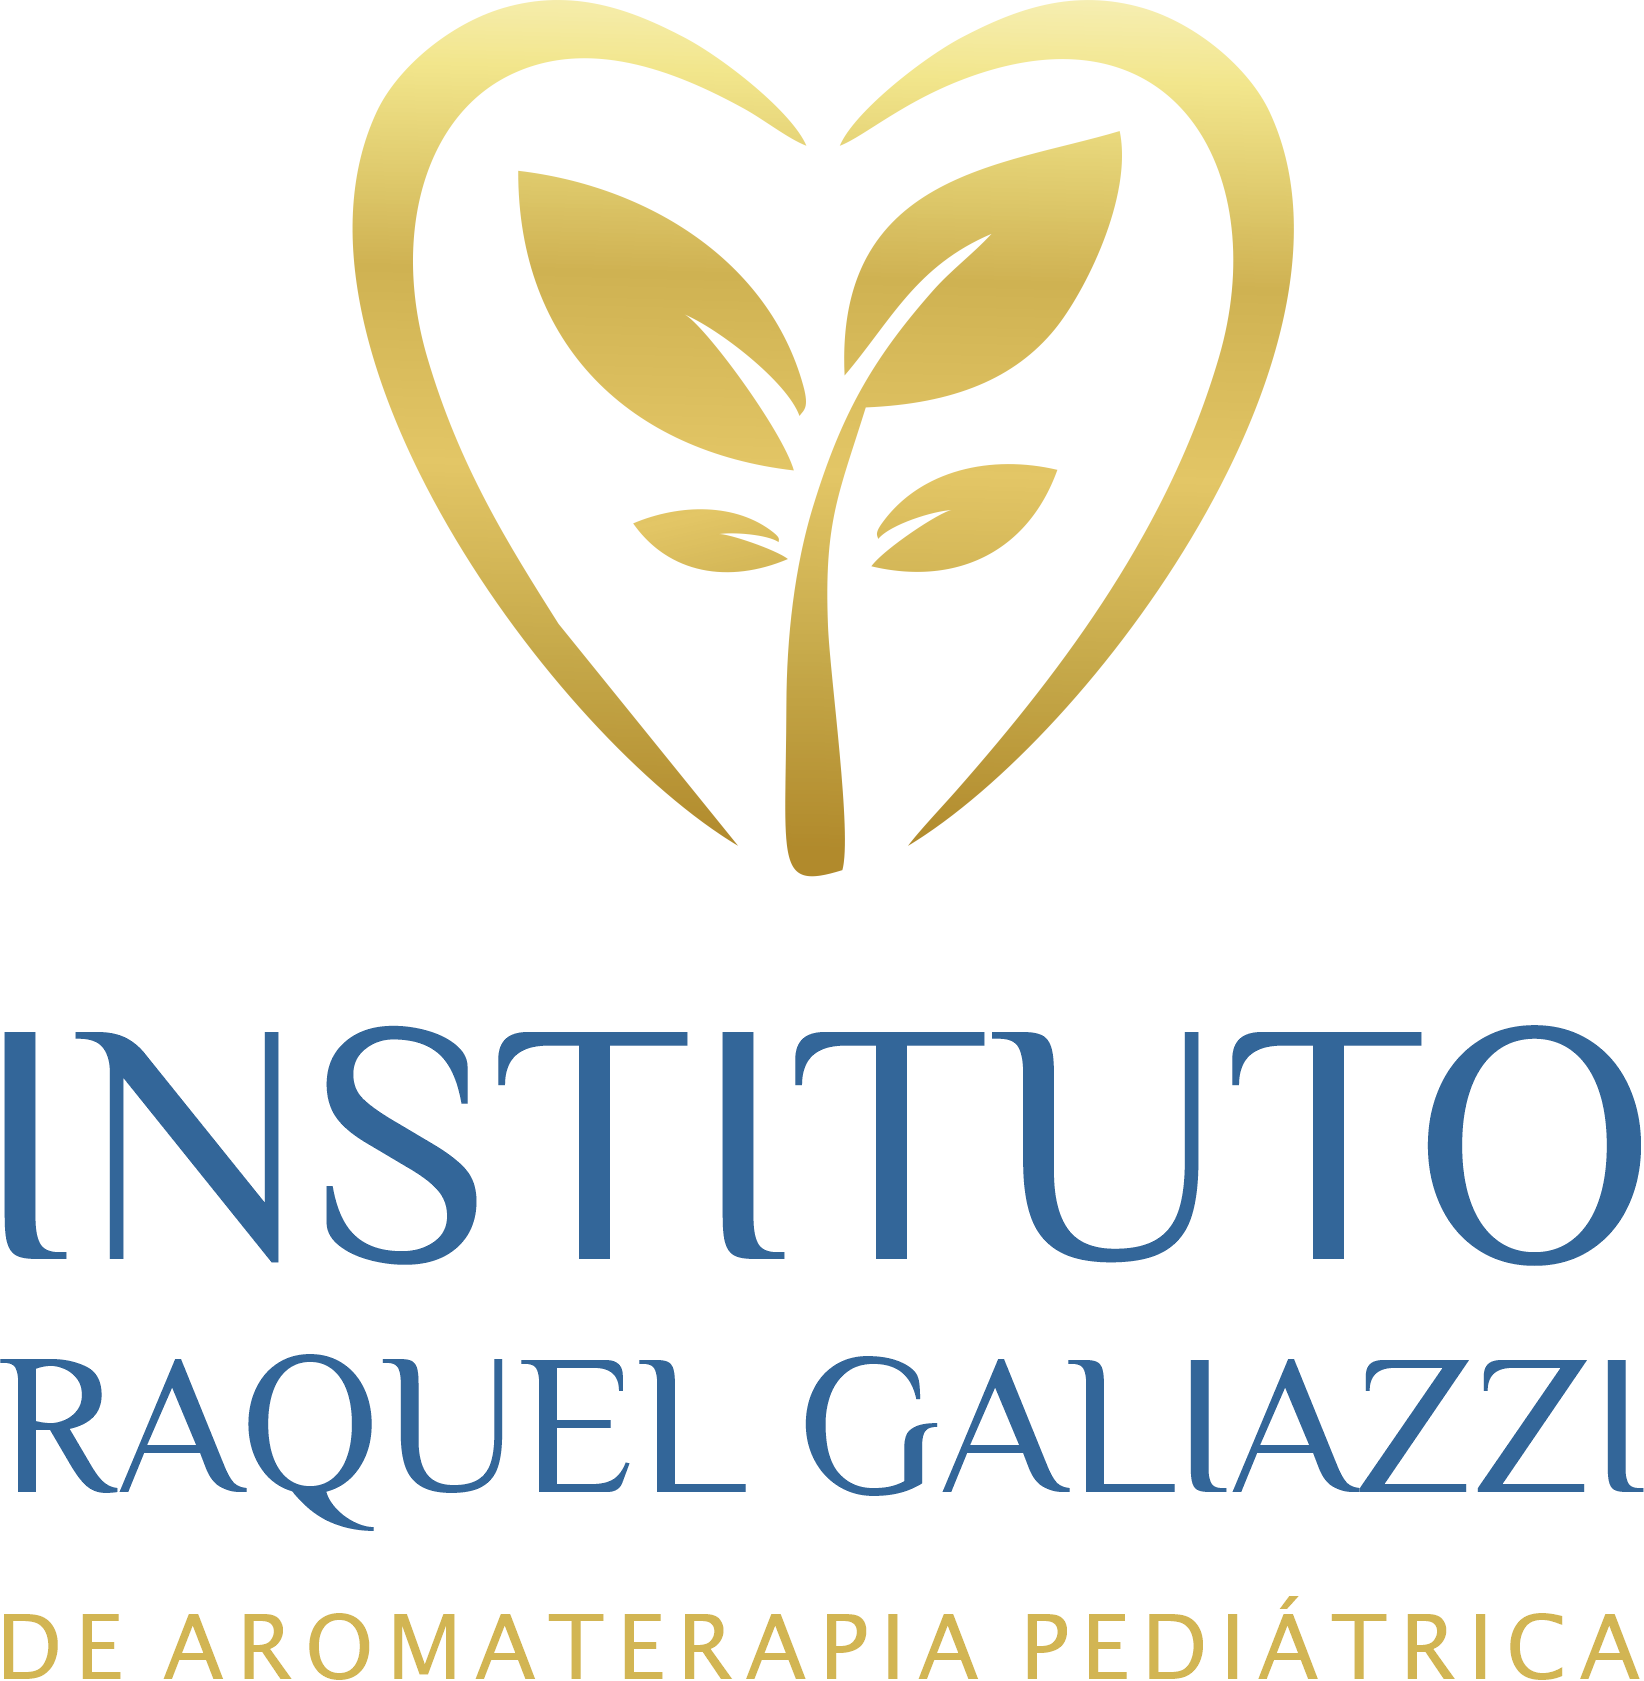 raquel-galiazzi-logo